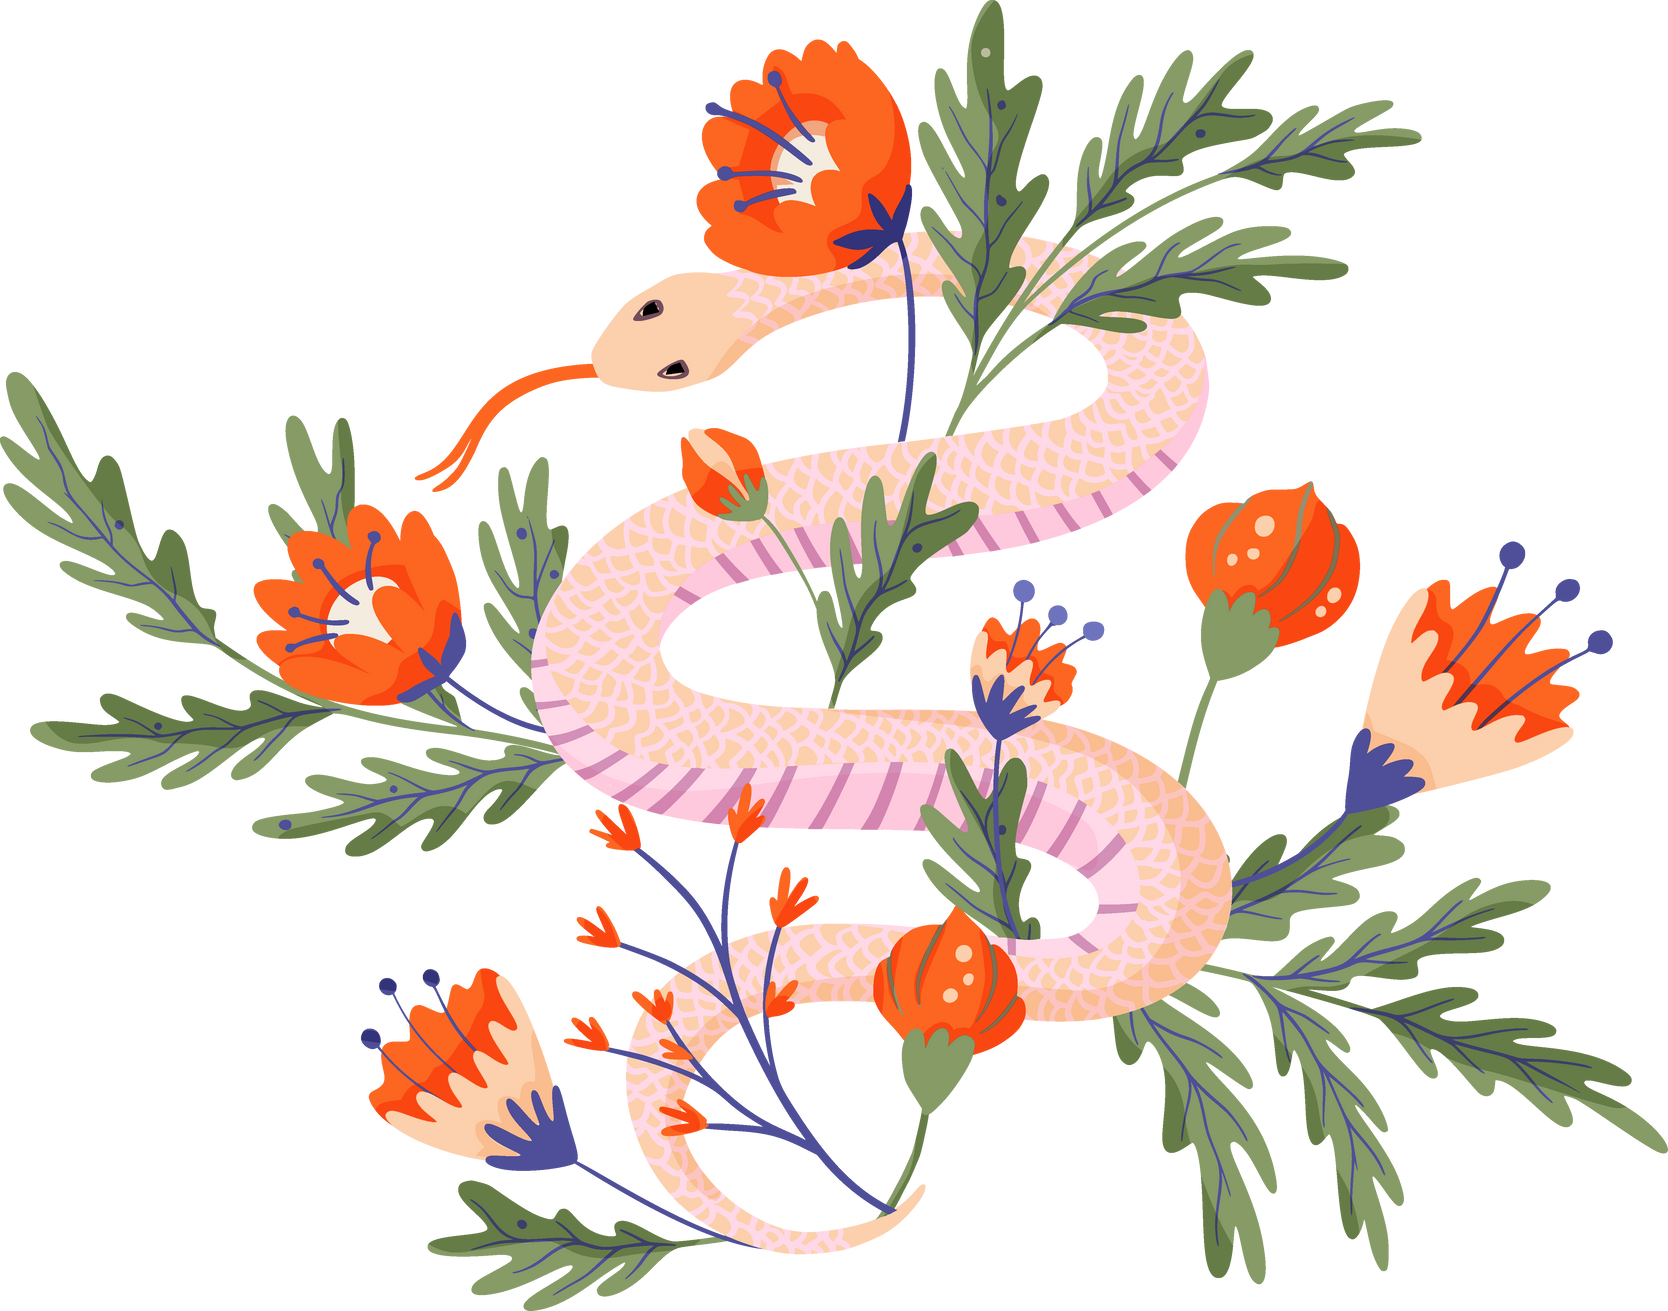 Snake flowers 